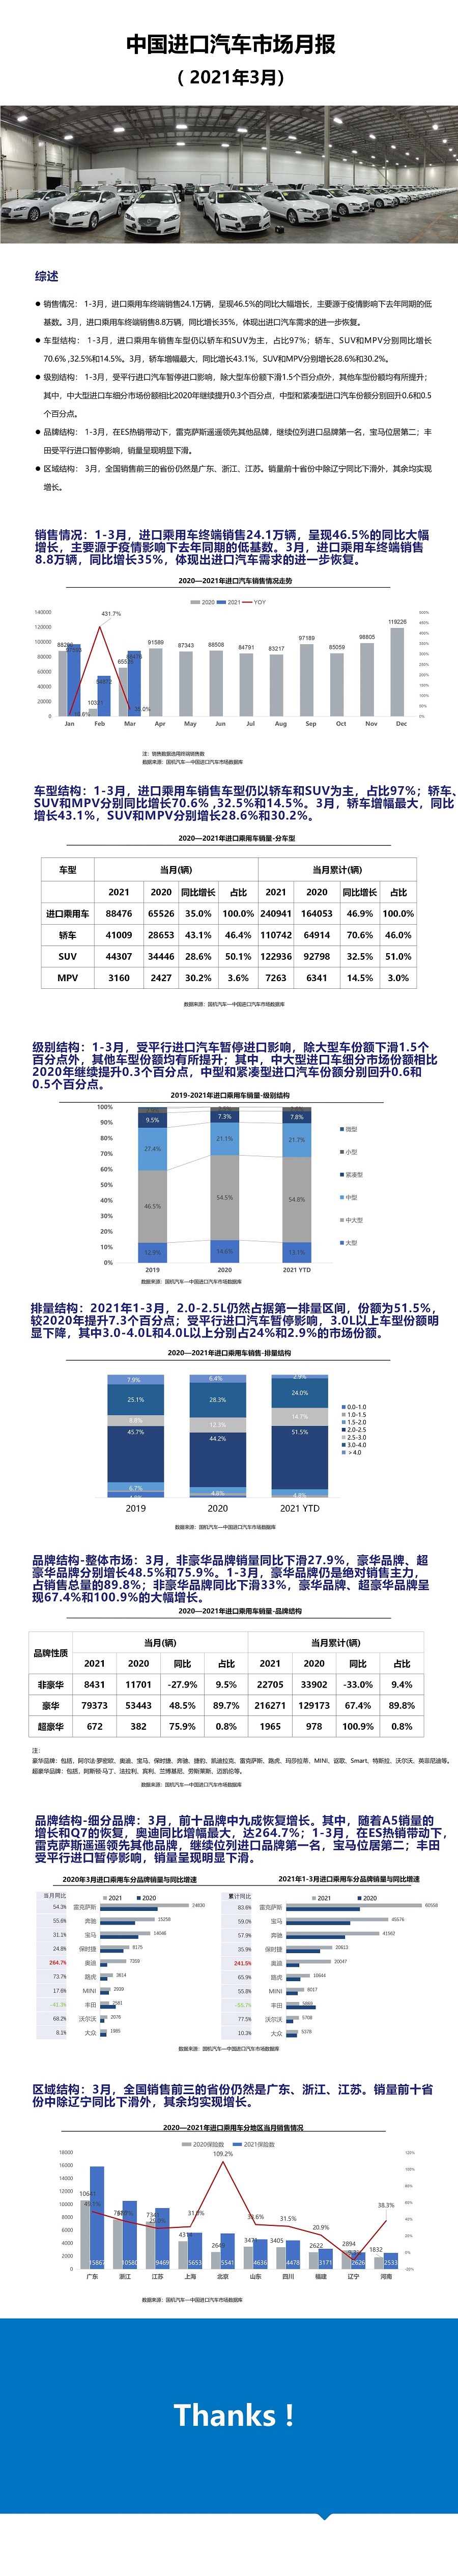 2021年3月中国进口汽车市场月报.jpg